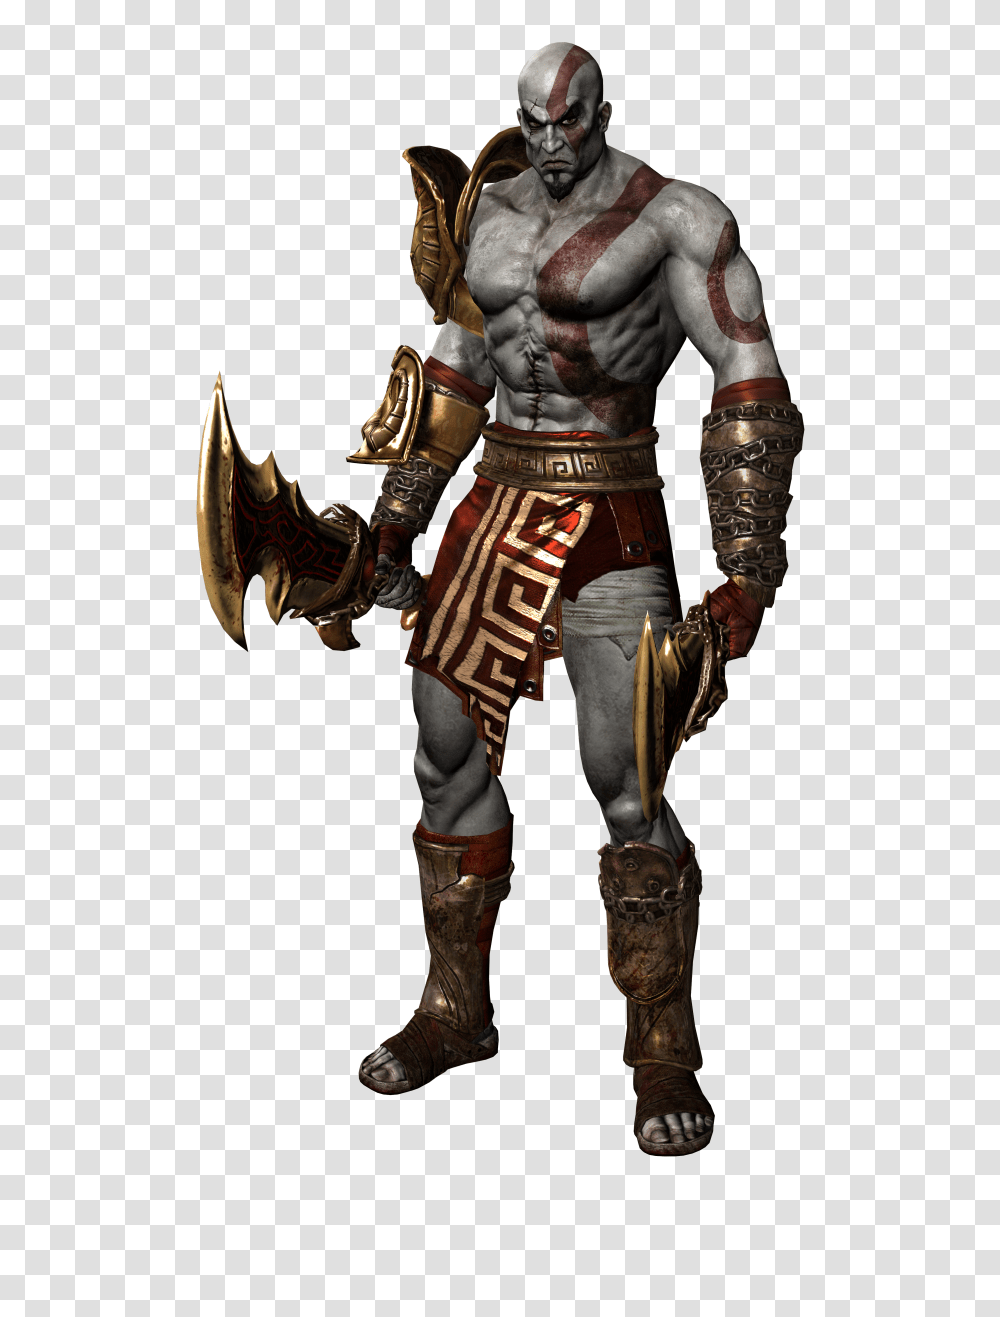 Steam Workshop Kratos God Of War Iii Transparent Png